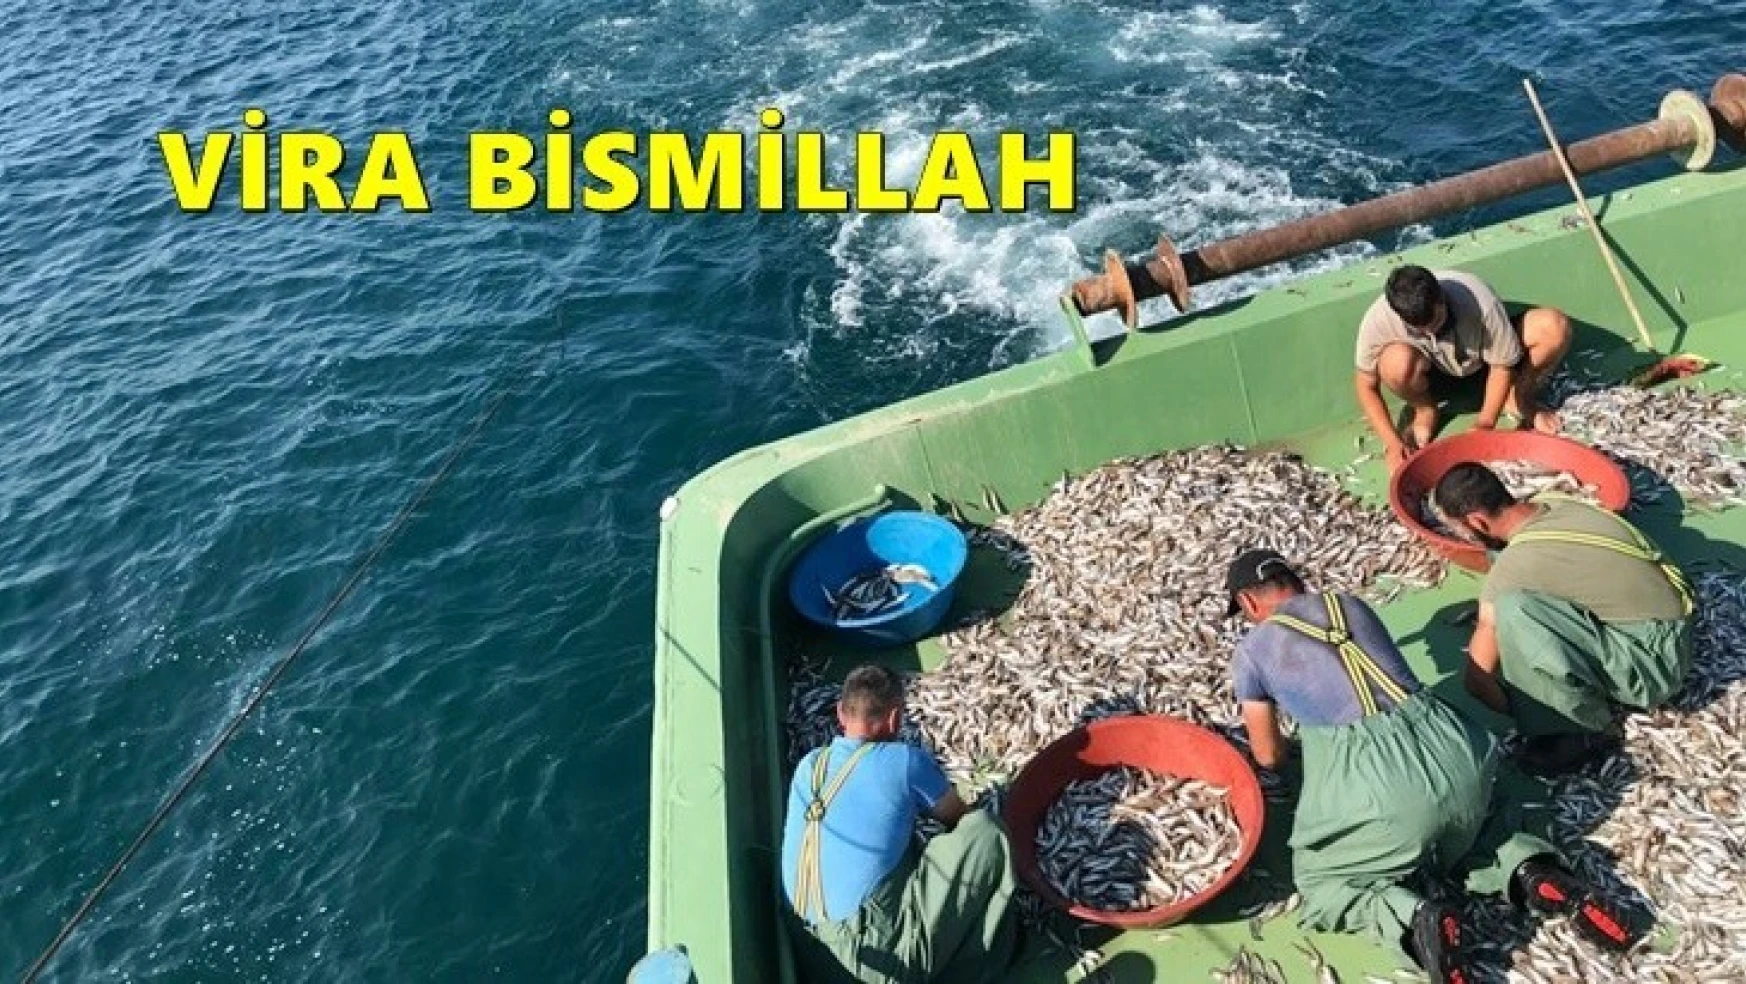 Sezon açıldı, Balıkçılar Vira Bismillah dedi